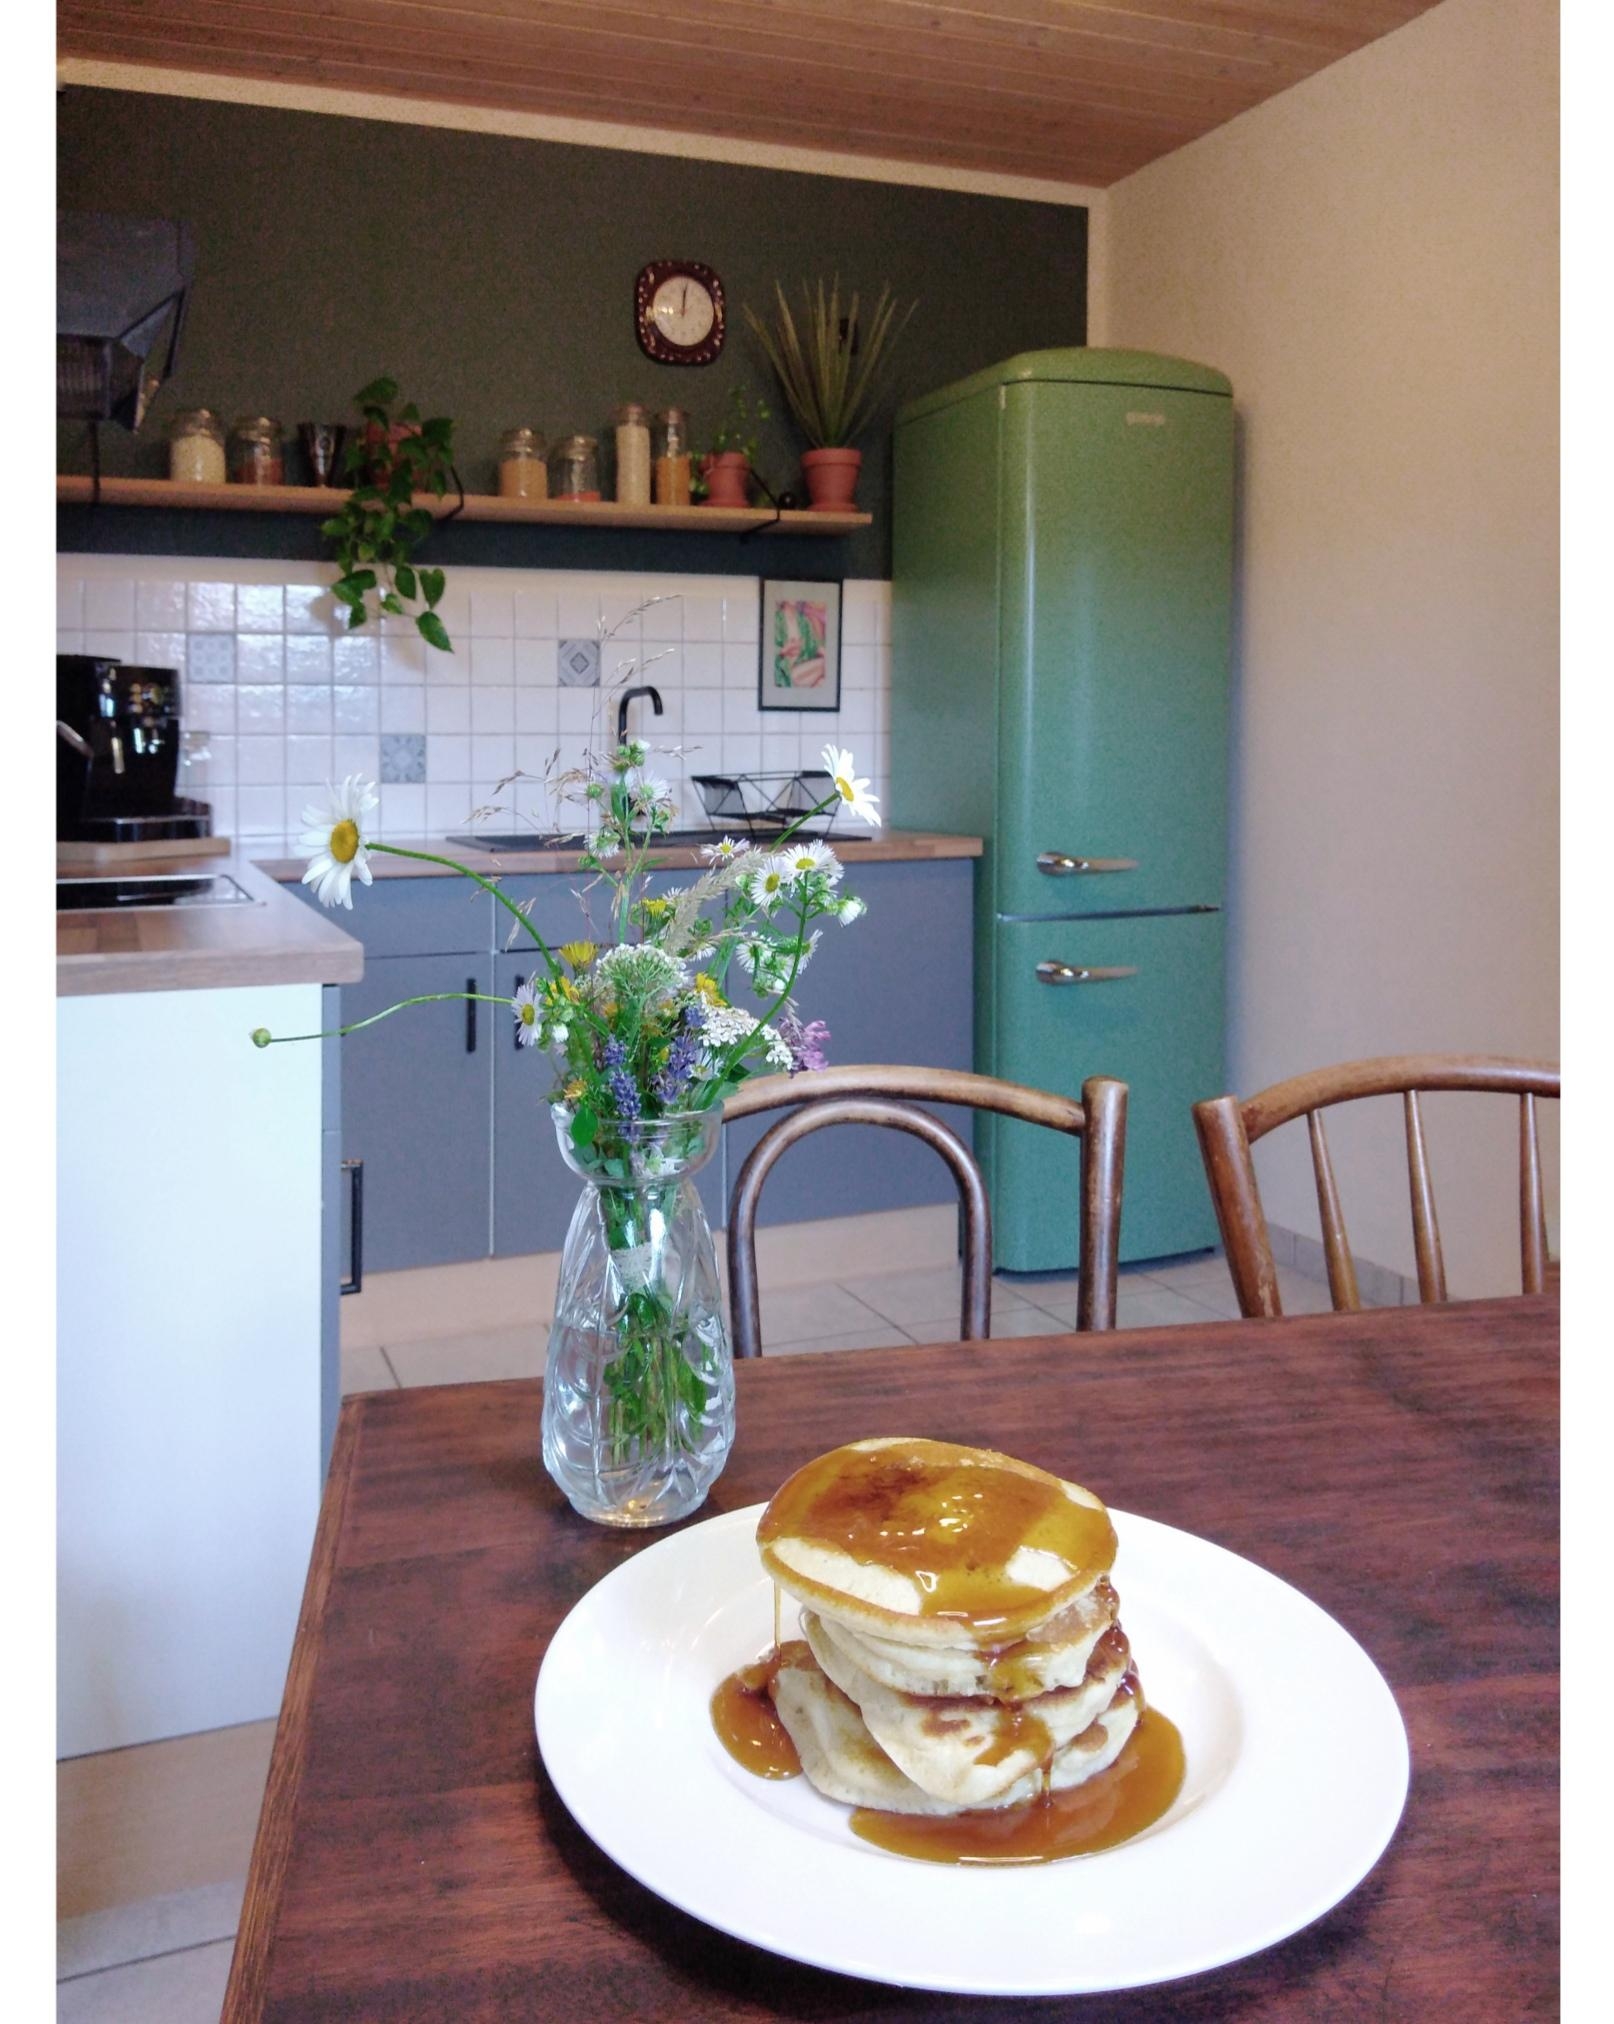 Pancakes dürfen am Wochenende auf einem #frühstücktisch nicht fehlen. 🥞💚 #foodchallenge 